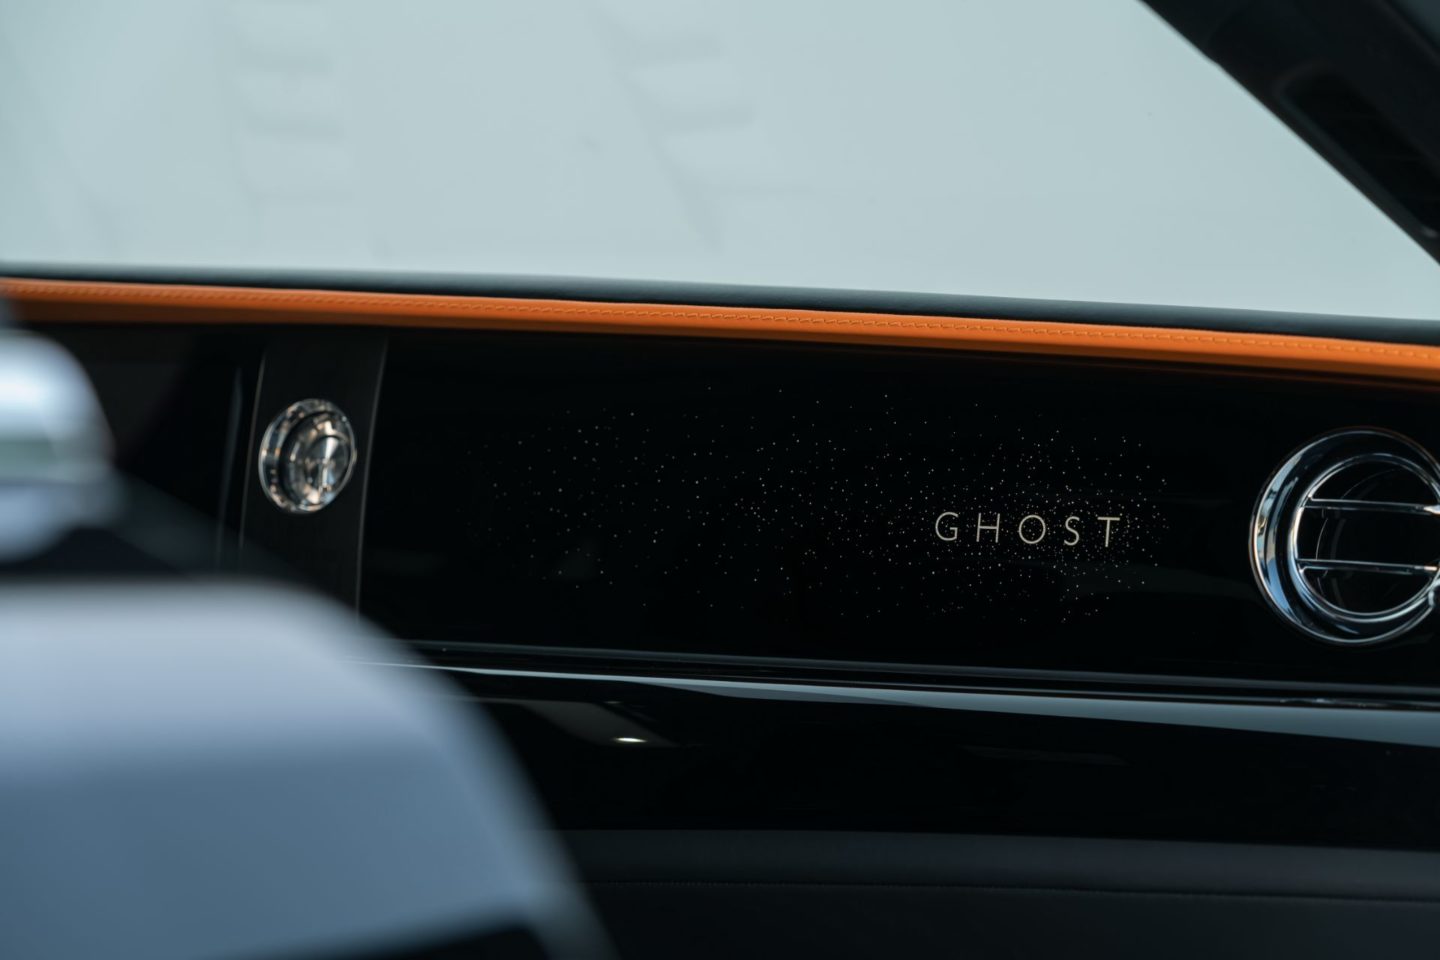 Spofec Rolls-Royce Ghost